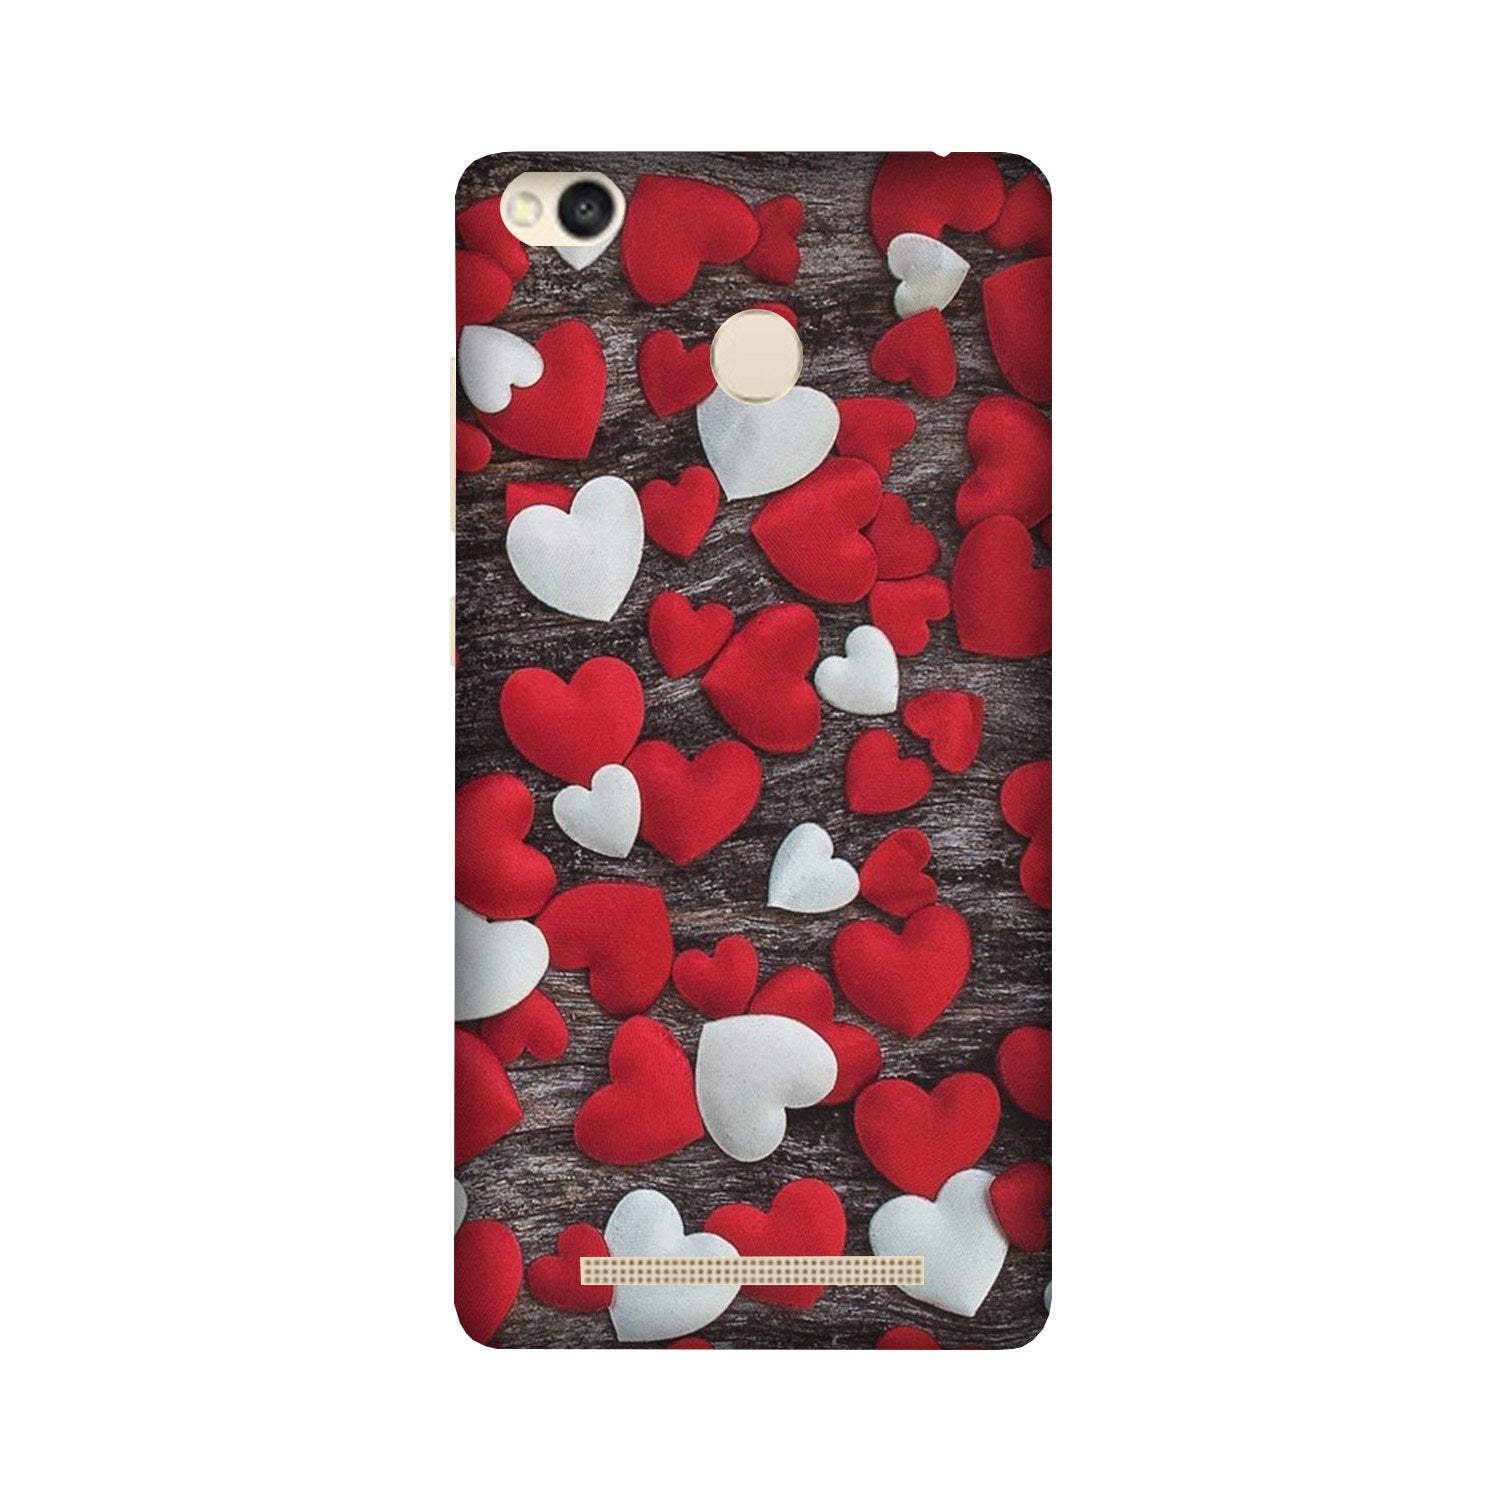 Red White Hearts Case for Redmi 3S Prime(Design - 105)